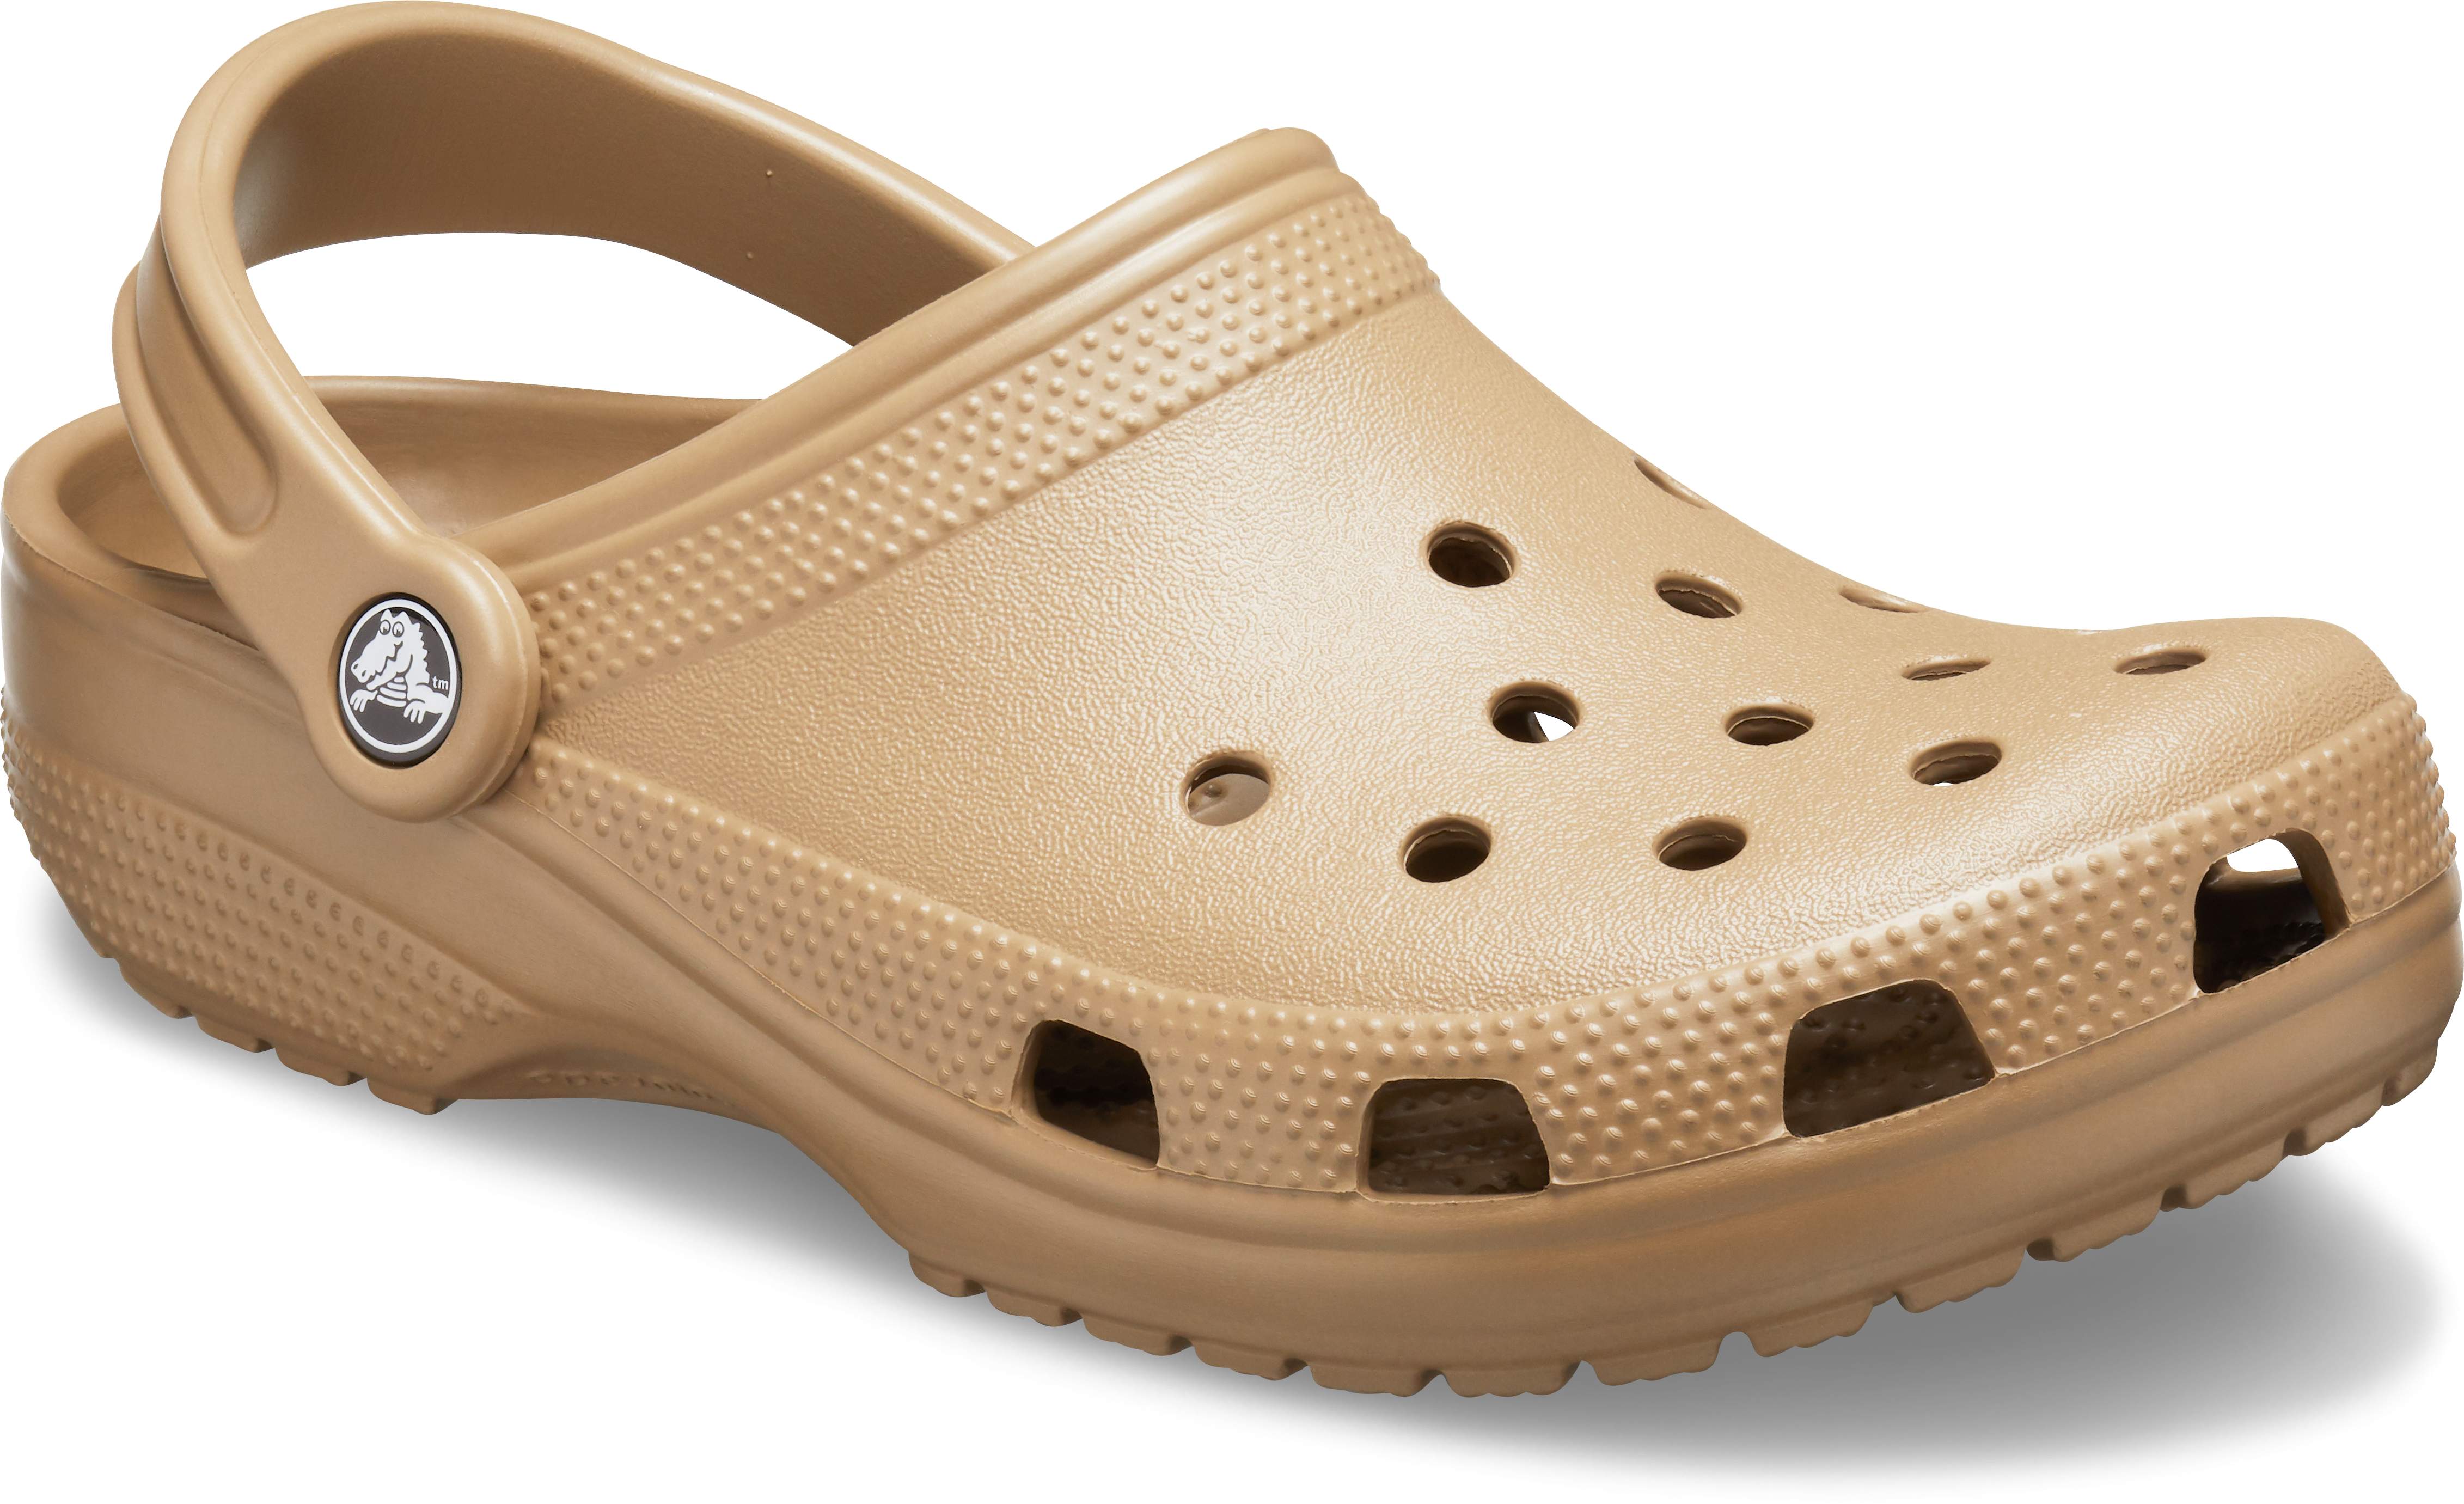 crocs rain sandals